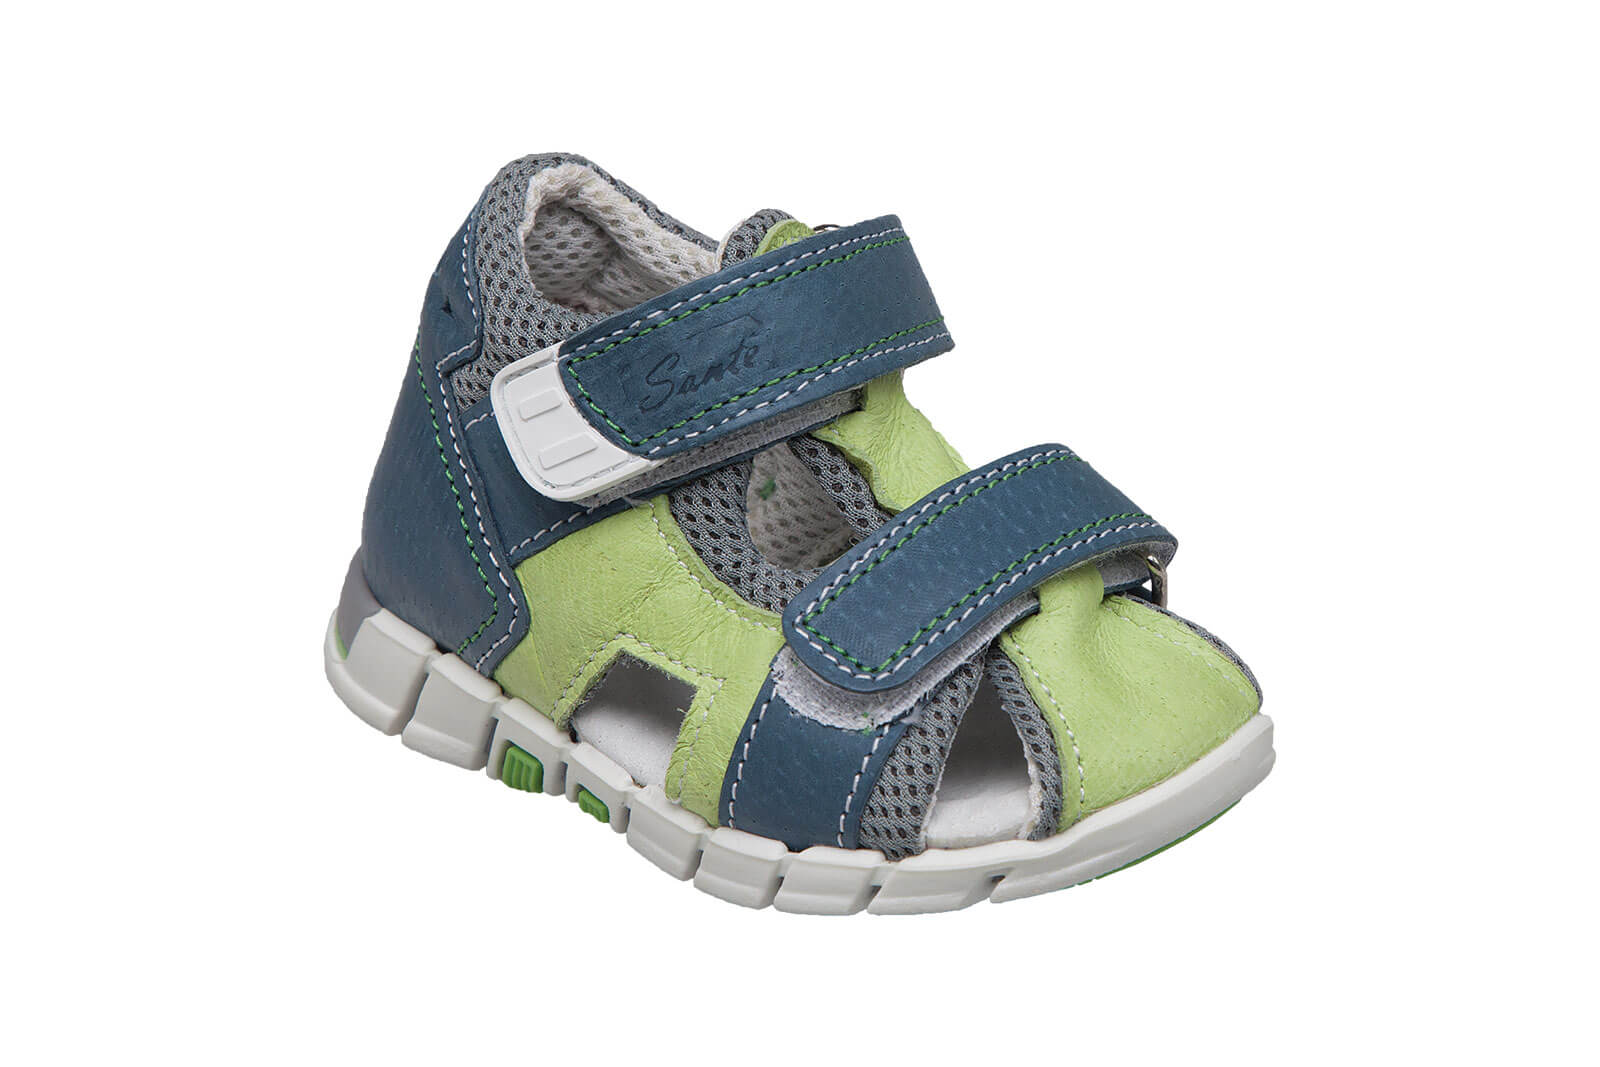 Zobrazit detail výrobku SANTÉ Zdravotní obuv dětská N/810/401/S89/S90 zelená 20 + 2 měsíce na vrácení zboží